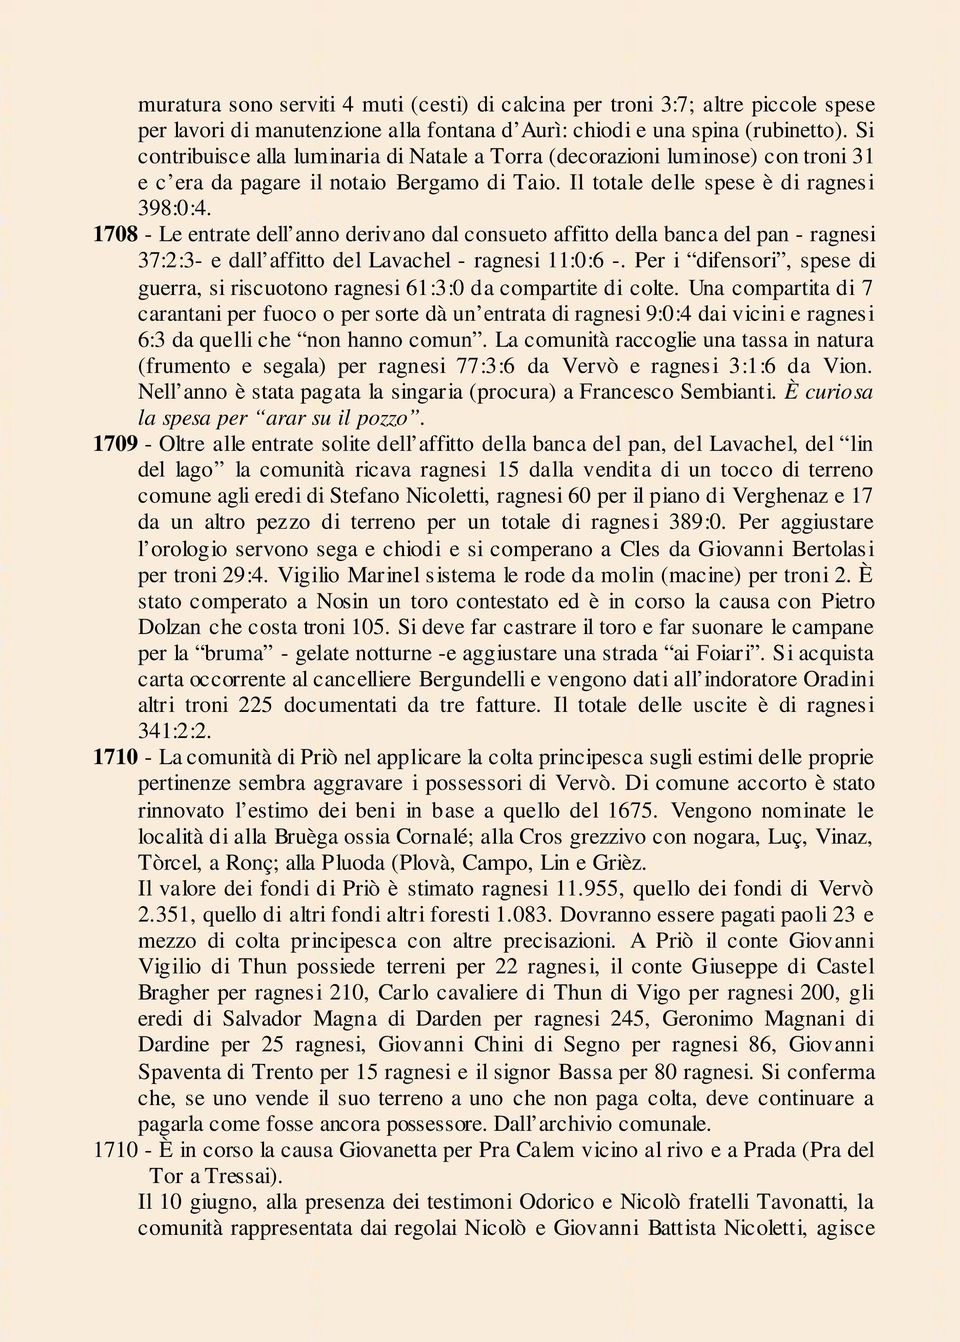 1708 - Le entrate dell anno derivano dal consueto affitto della banca del pan - ragnesi 37:2:3- e dall affitto del Lavachel - ragnesi 11:0:6 -.